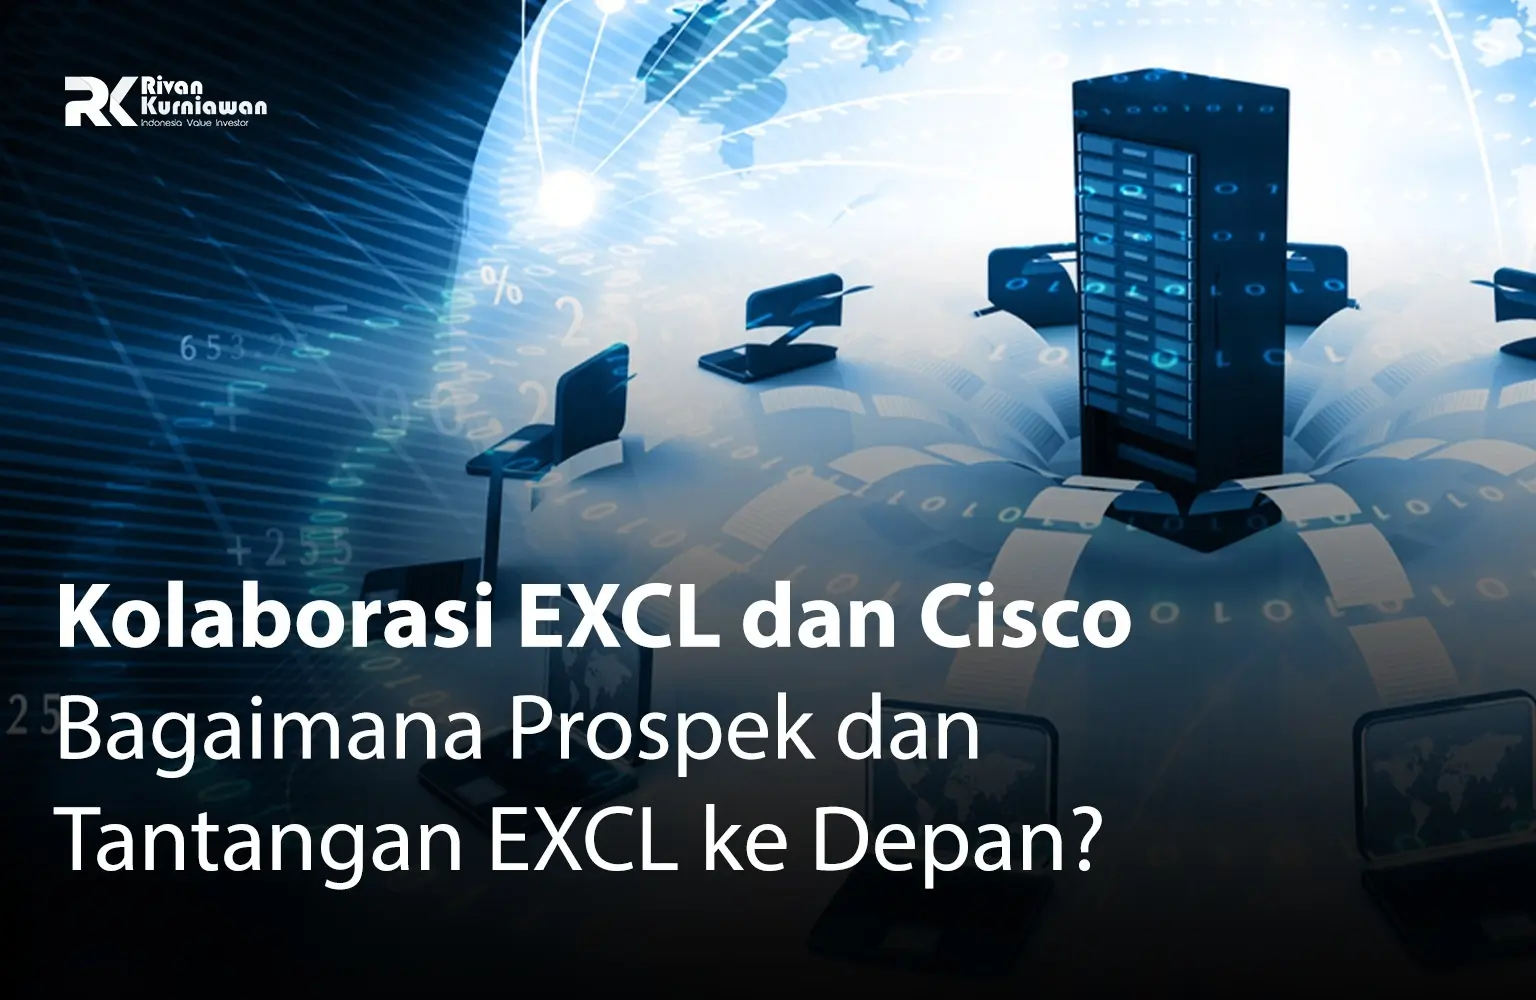 Kolaborasi-EXCL-dan-Cisco